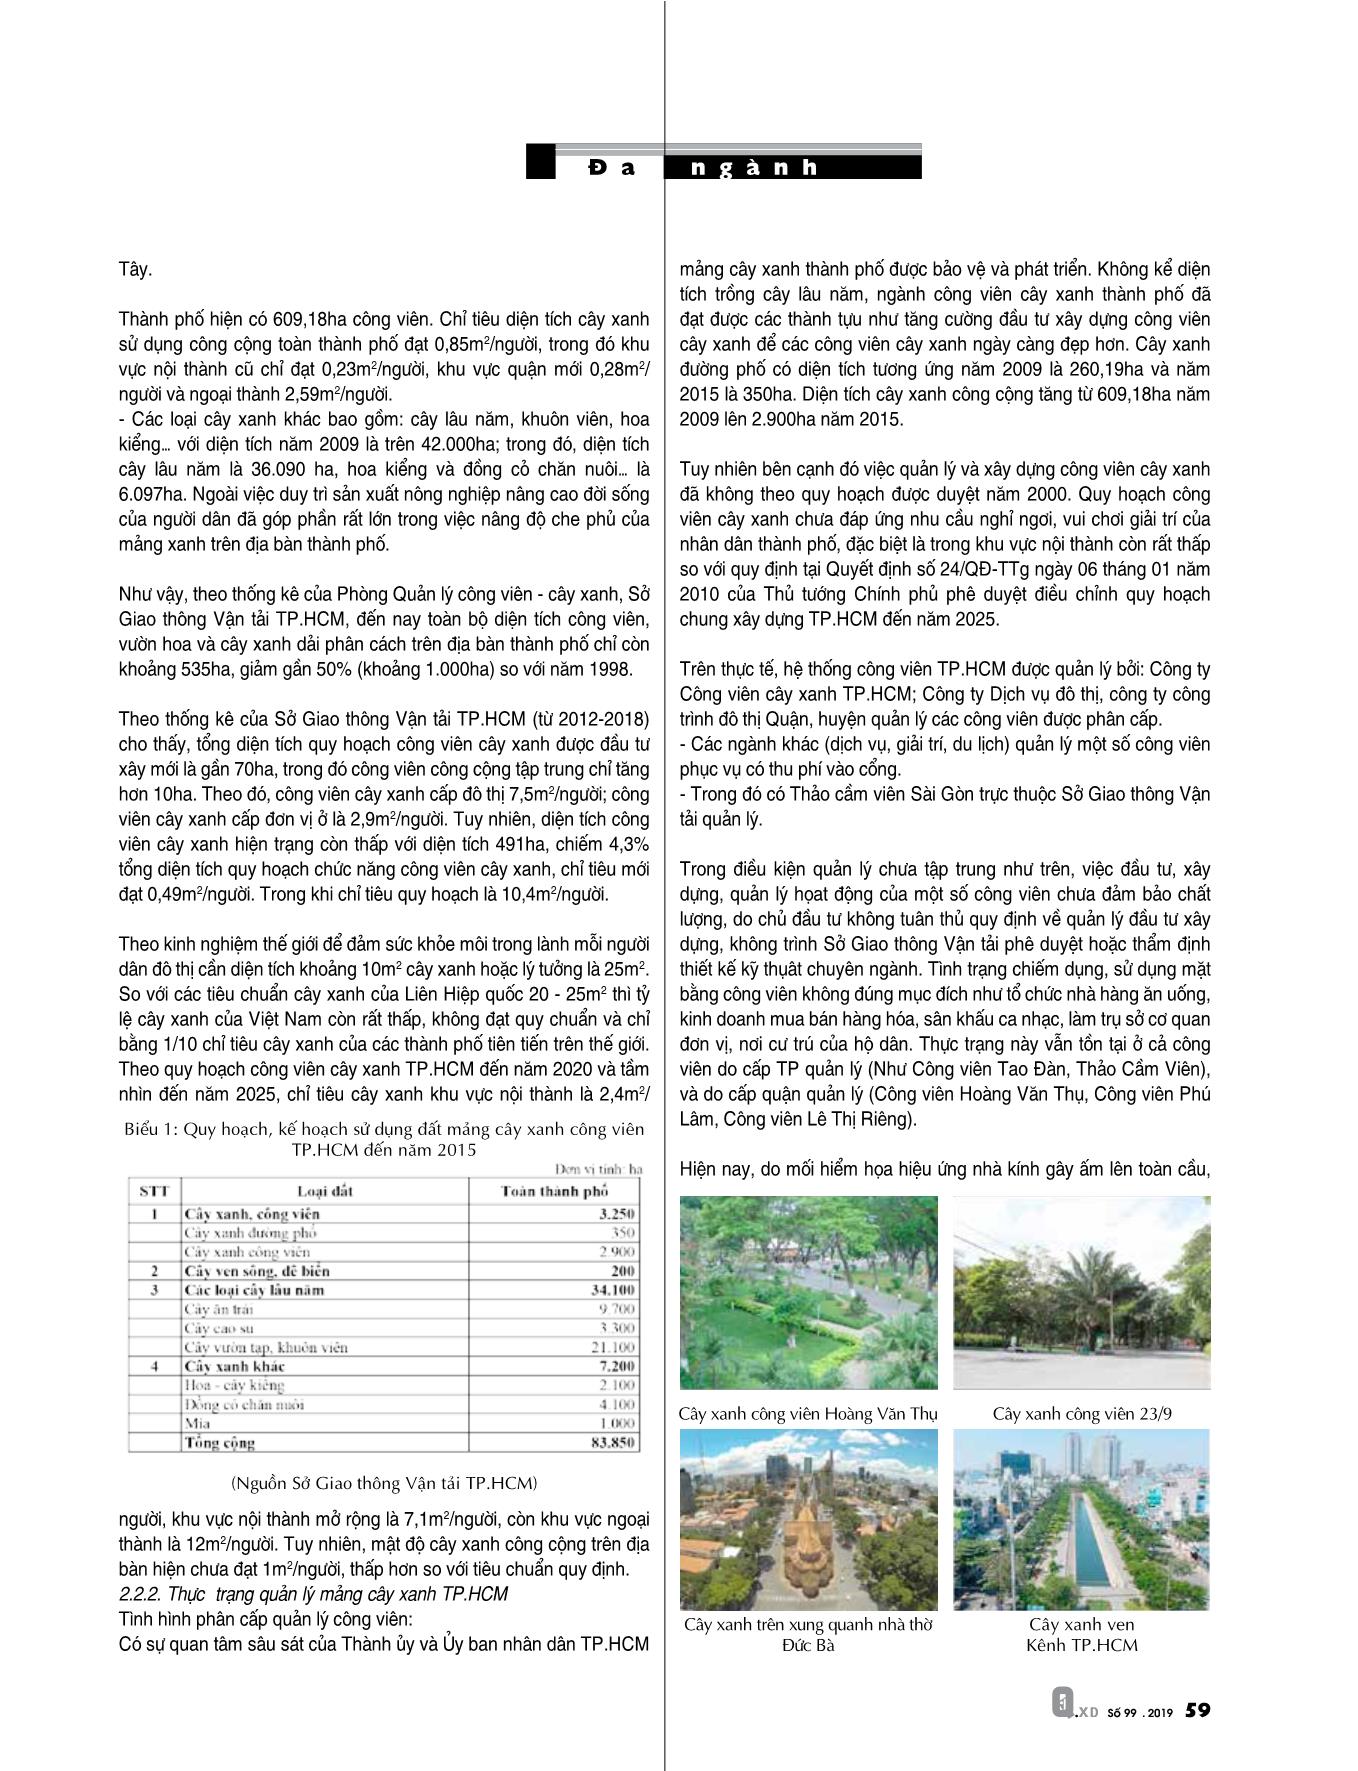 Thực trạng và giải pháp phát triển mang cây xanh đô thị thành phố Hồ Chí Minh trang 4